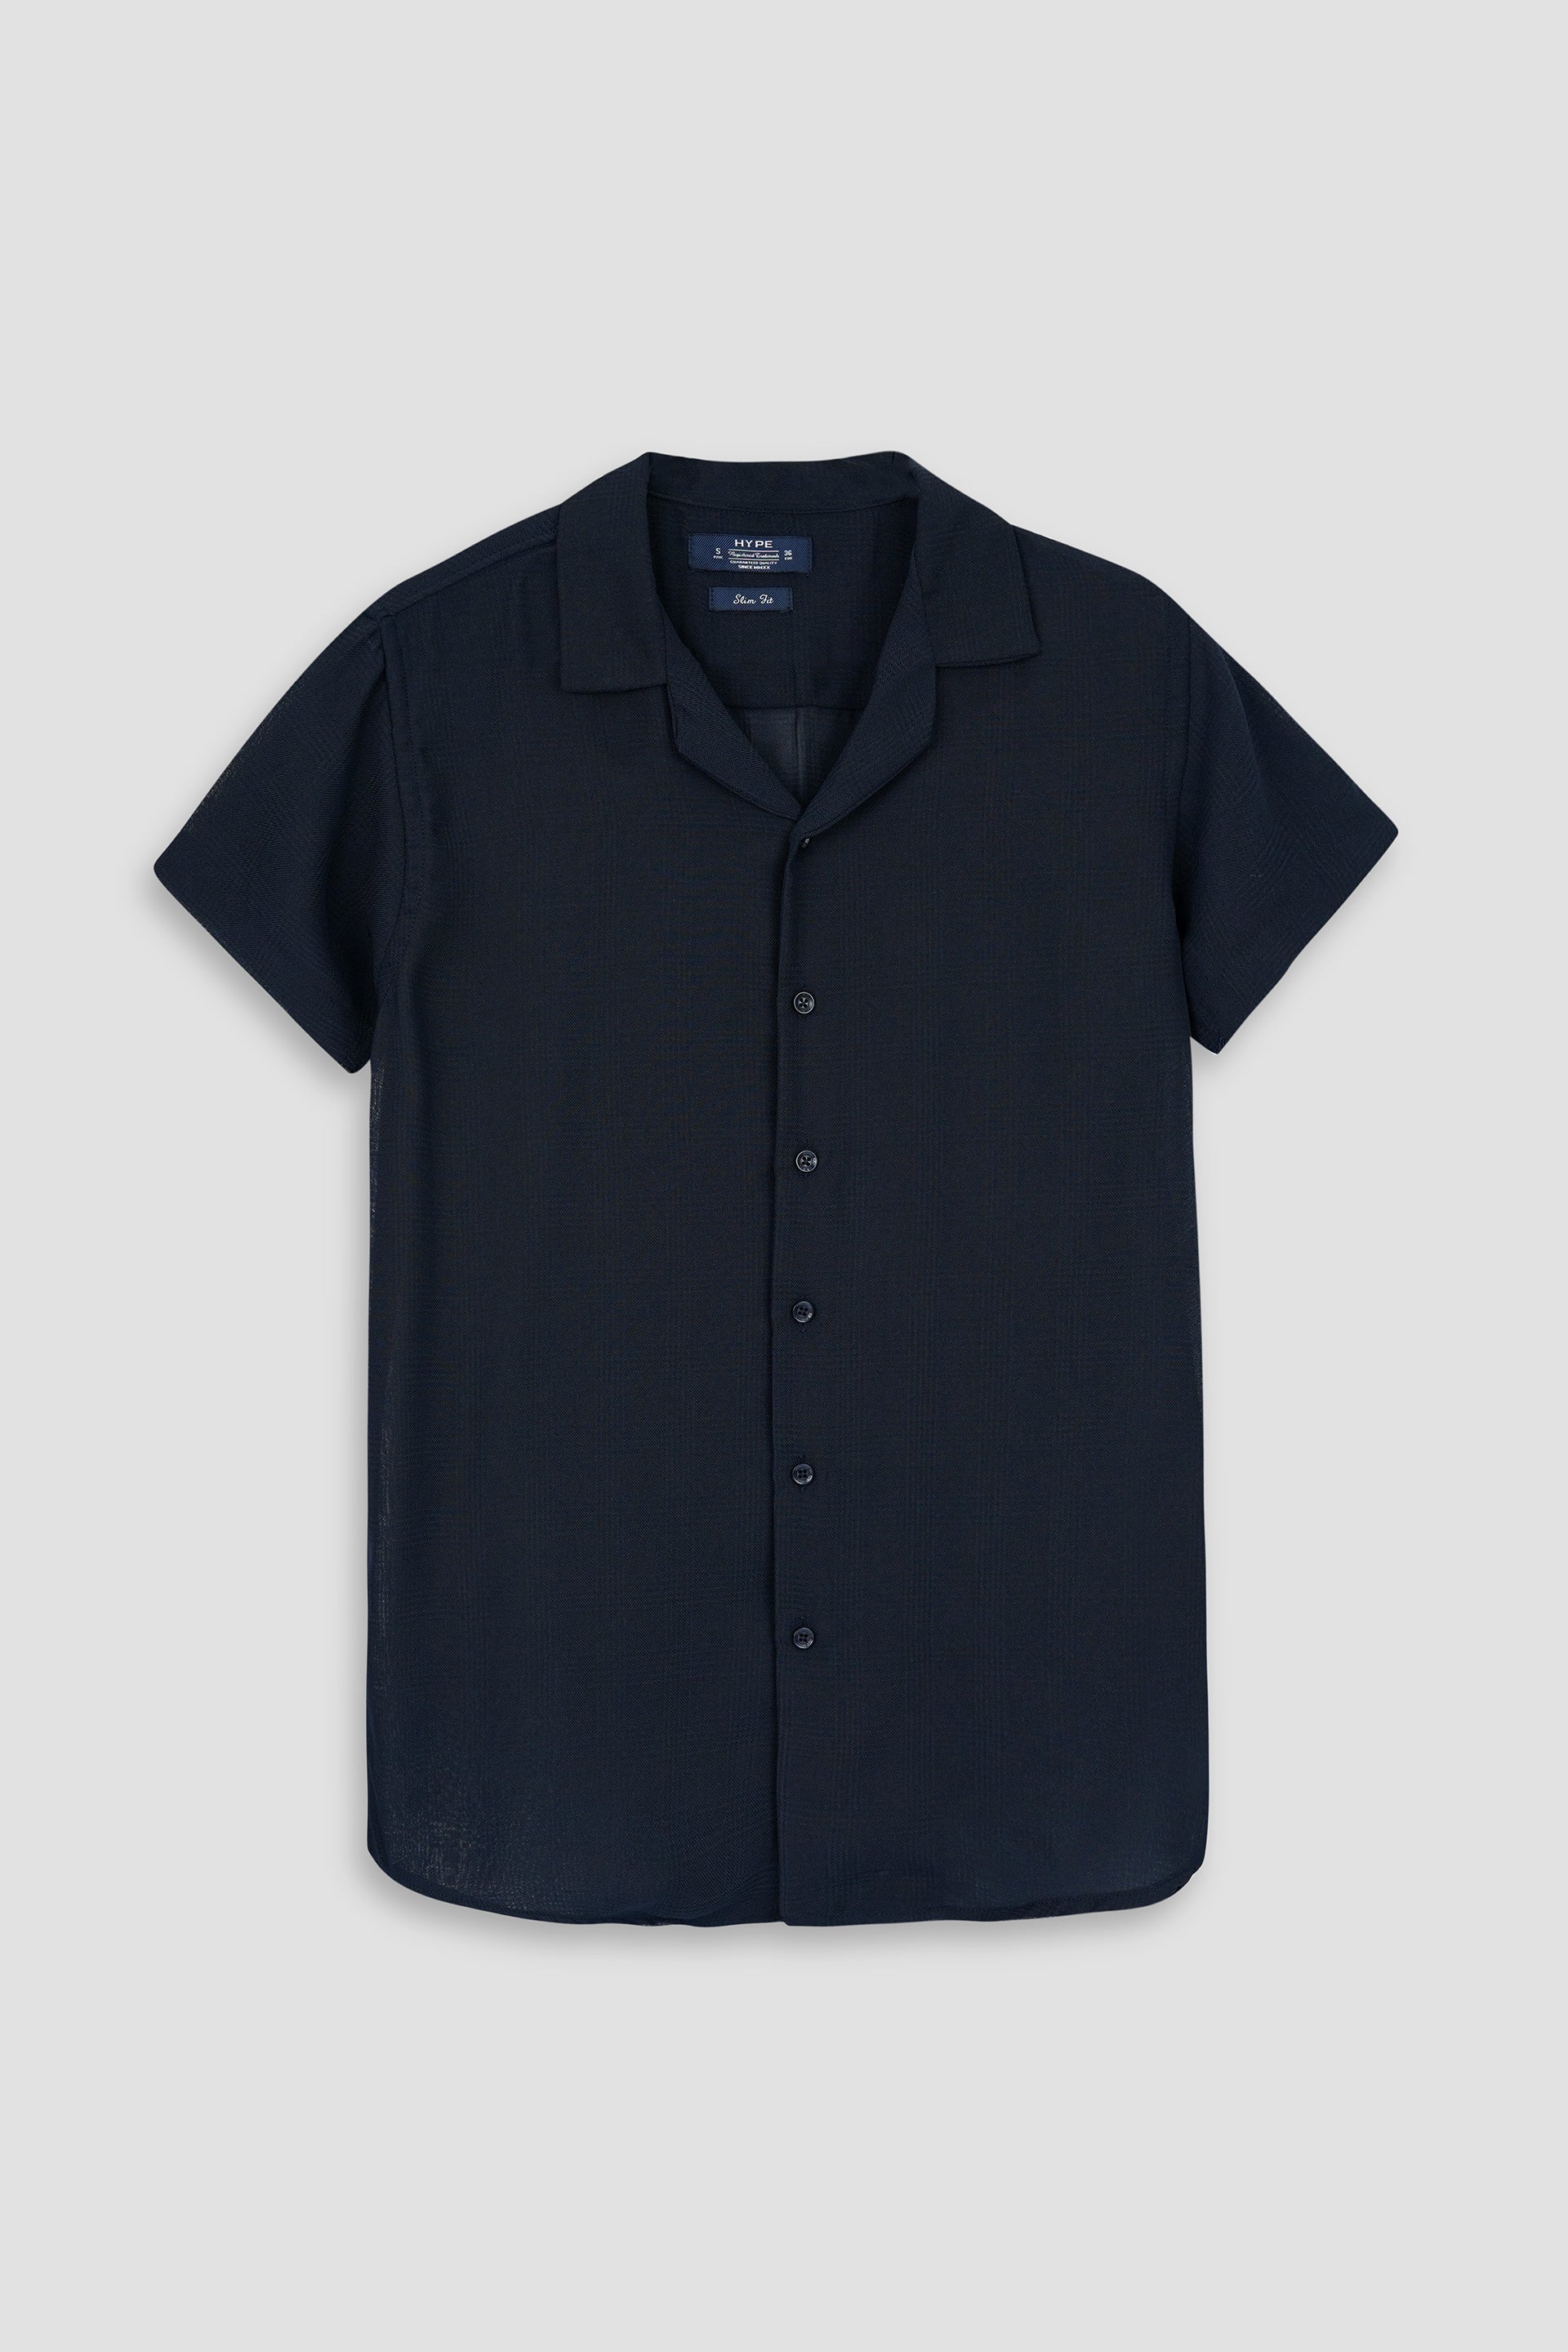 Half Sleeve Coat Collar Navy Shirt 002428